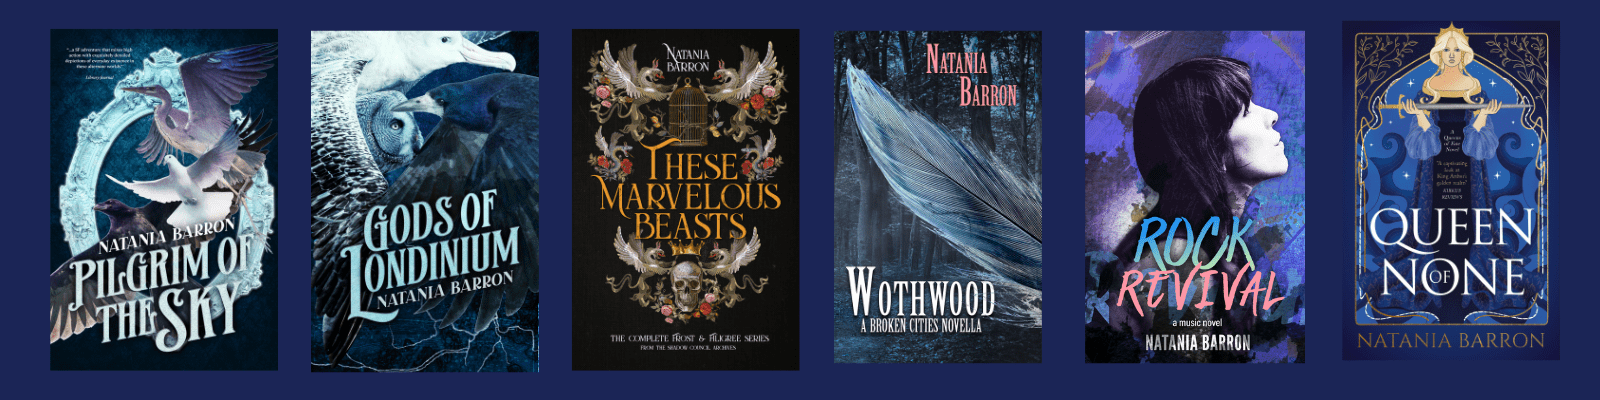 Books by fantasy author and fashion historian Natania Barron